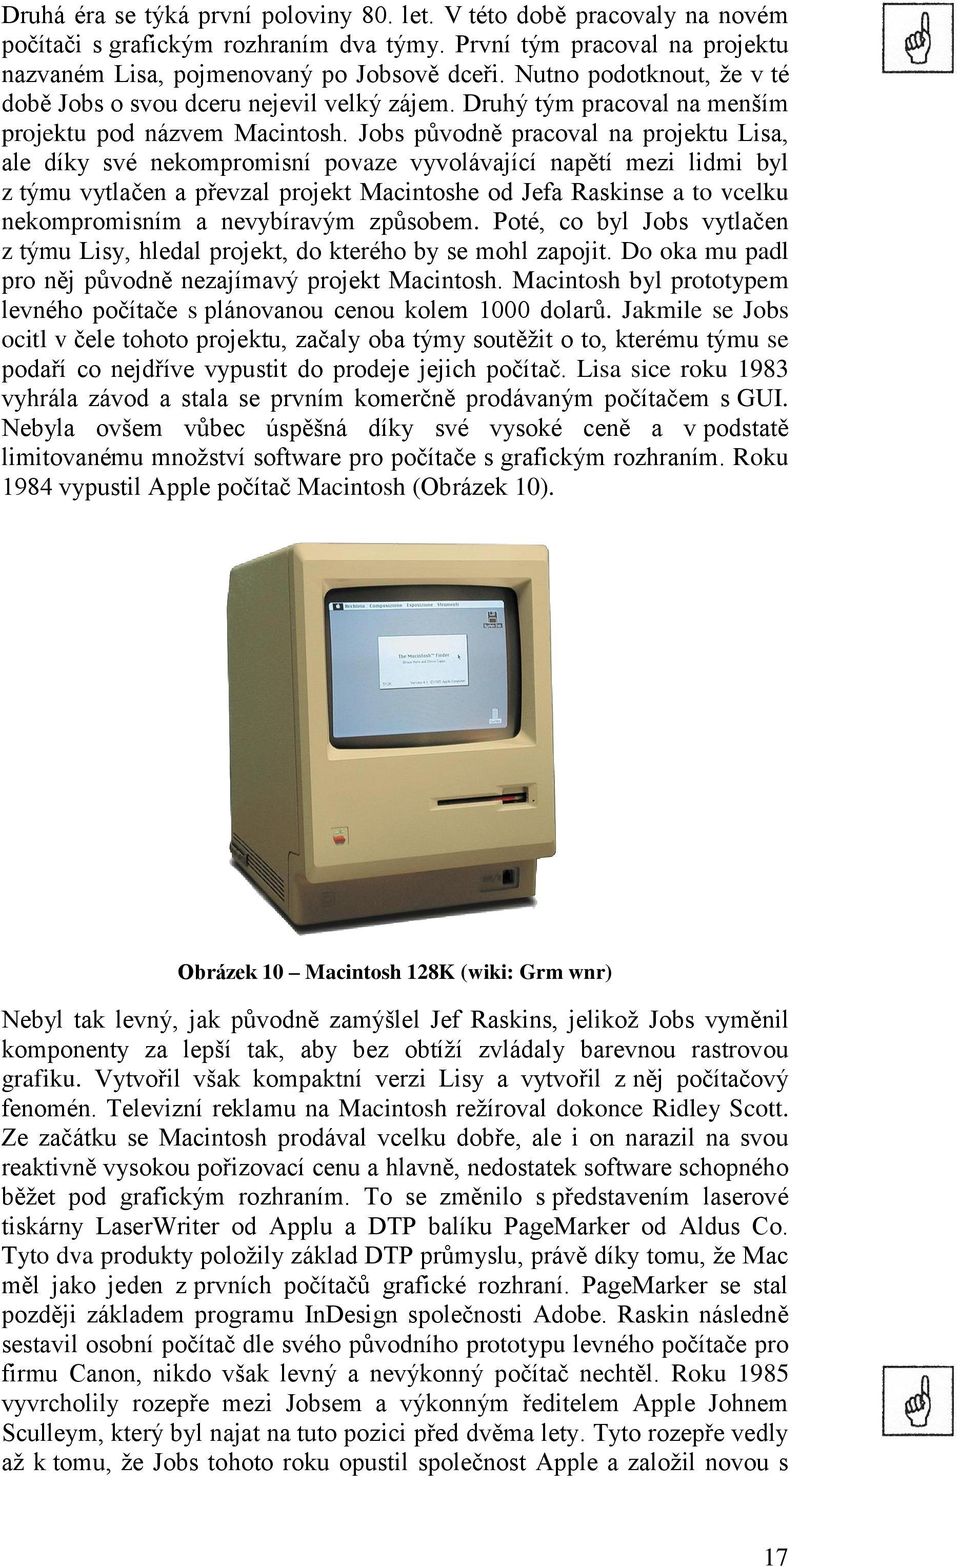 Jobs původně pracoval na projektu Lisa, ale díky své nekompromisní povaze vyvolávající napětí mezi lidmi byl z týmu vytlačen a převzal projekt Macintoshe od Jefa Raskinse a to vcelku nekompromisním a